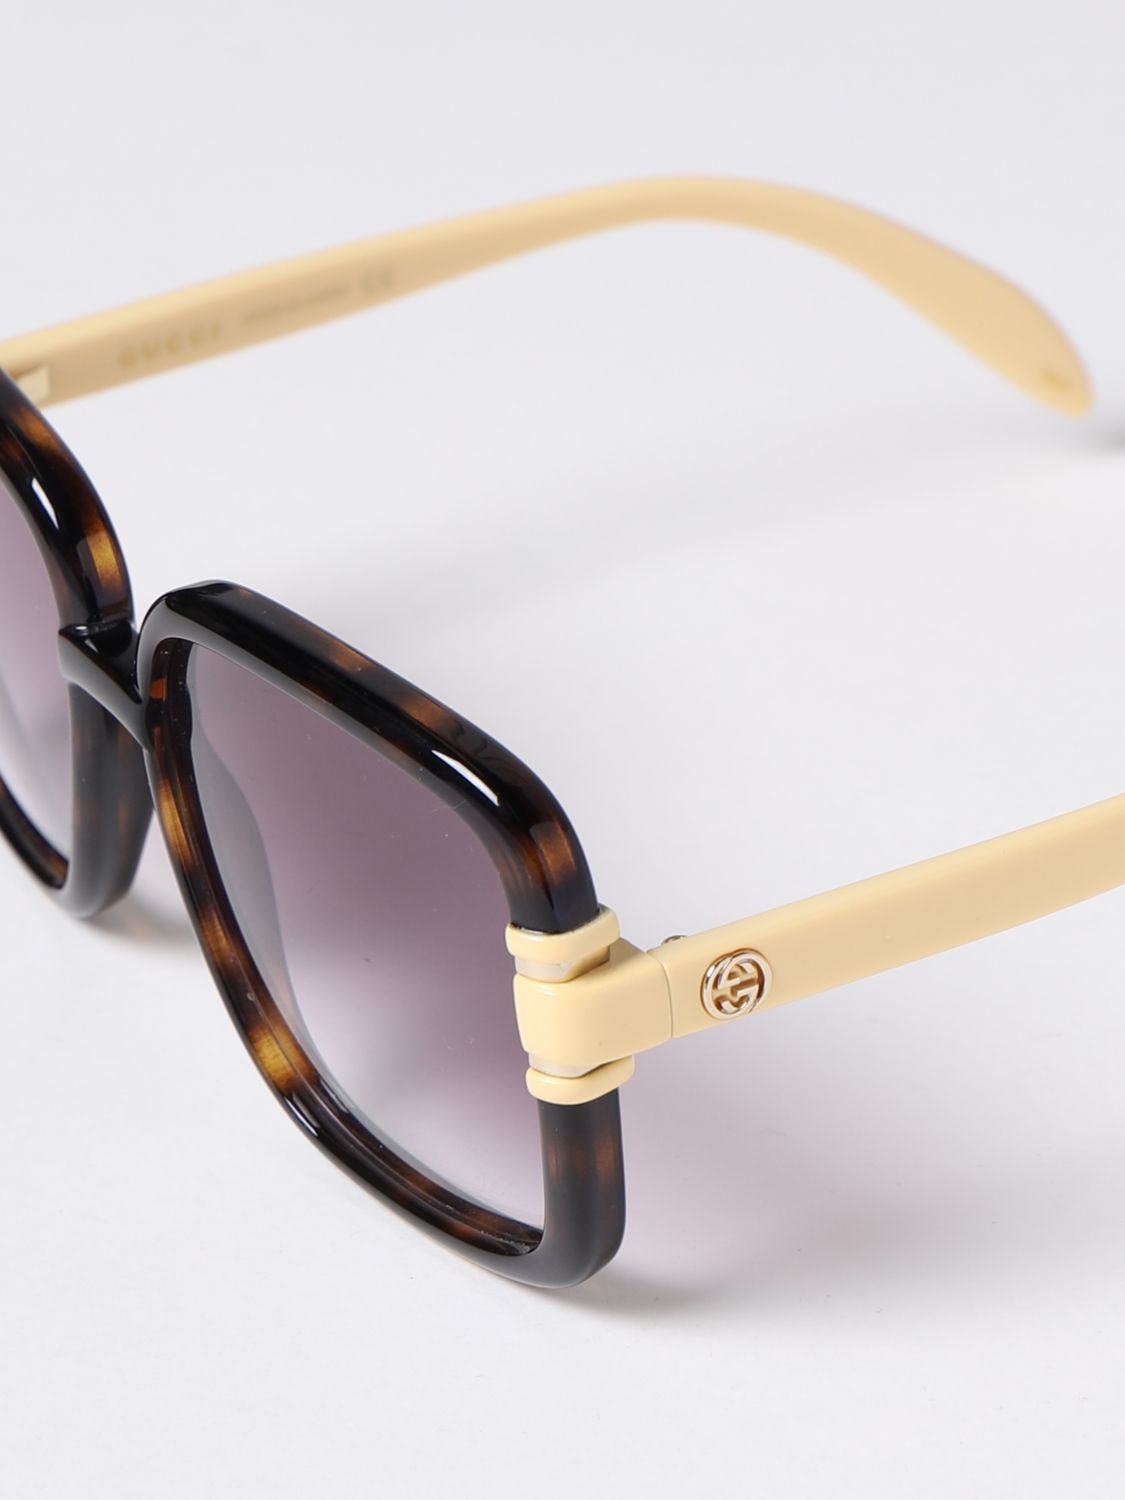 Gucci GG1066S-004 59mm New Sunglasses